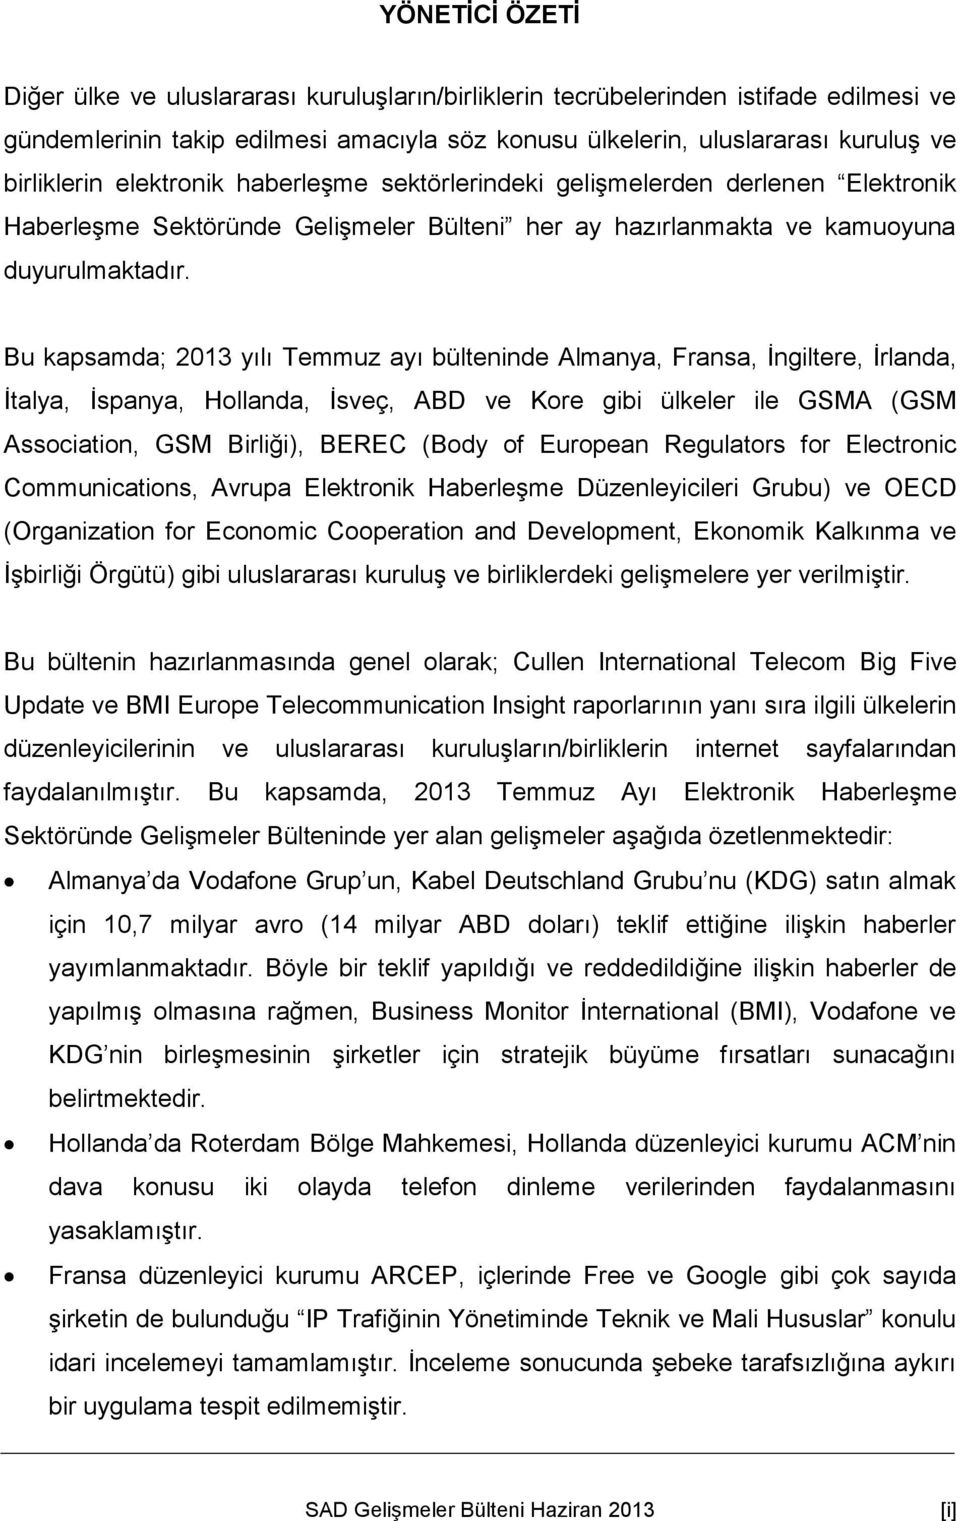 Bu kapsamda; 2013 yılı Temmuz ayı bülteninde Almanya, Fransa, İngiltere, İrlanda, İtalya, İspanya, Hollanda, İsveç, ABD ve Kore gibi ülkeler ile GSMA (GSM Association, GSM Birliği), BEREC (Body of